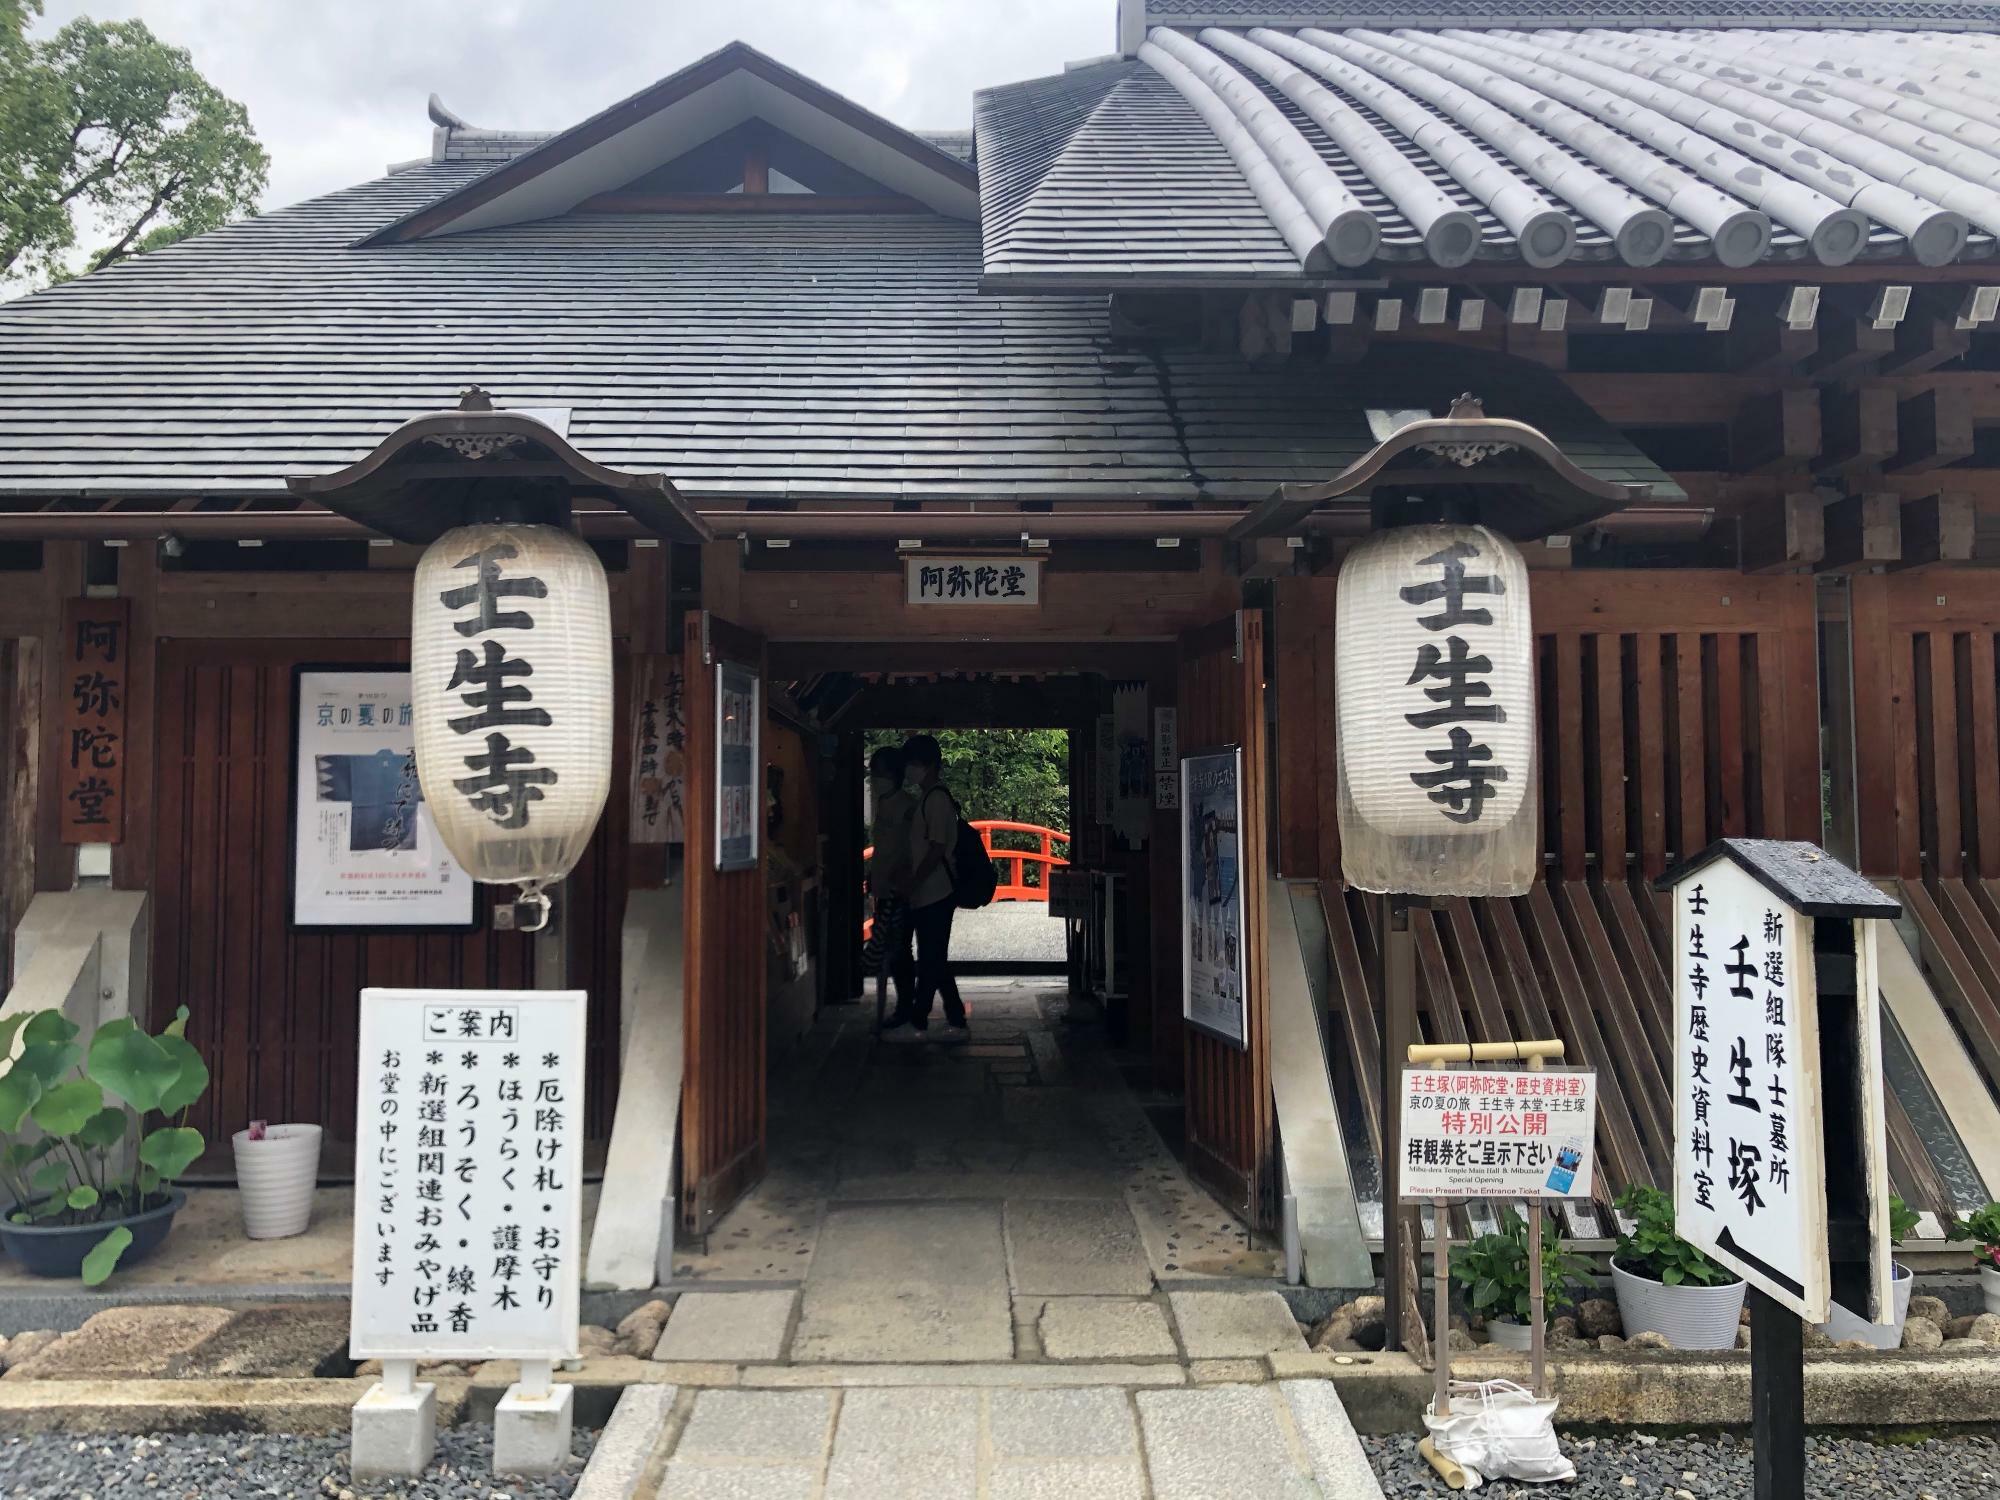 阿弥陀堂。この奥に壬生塚、地階に壬生寺歴史資料室があります